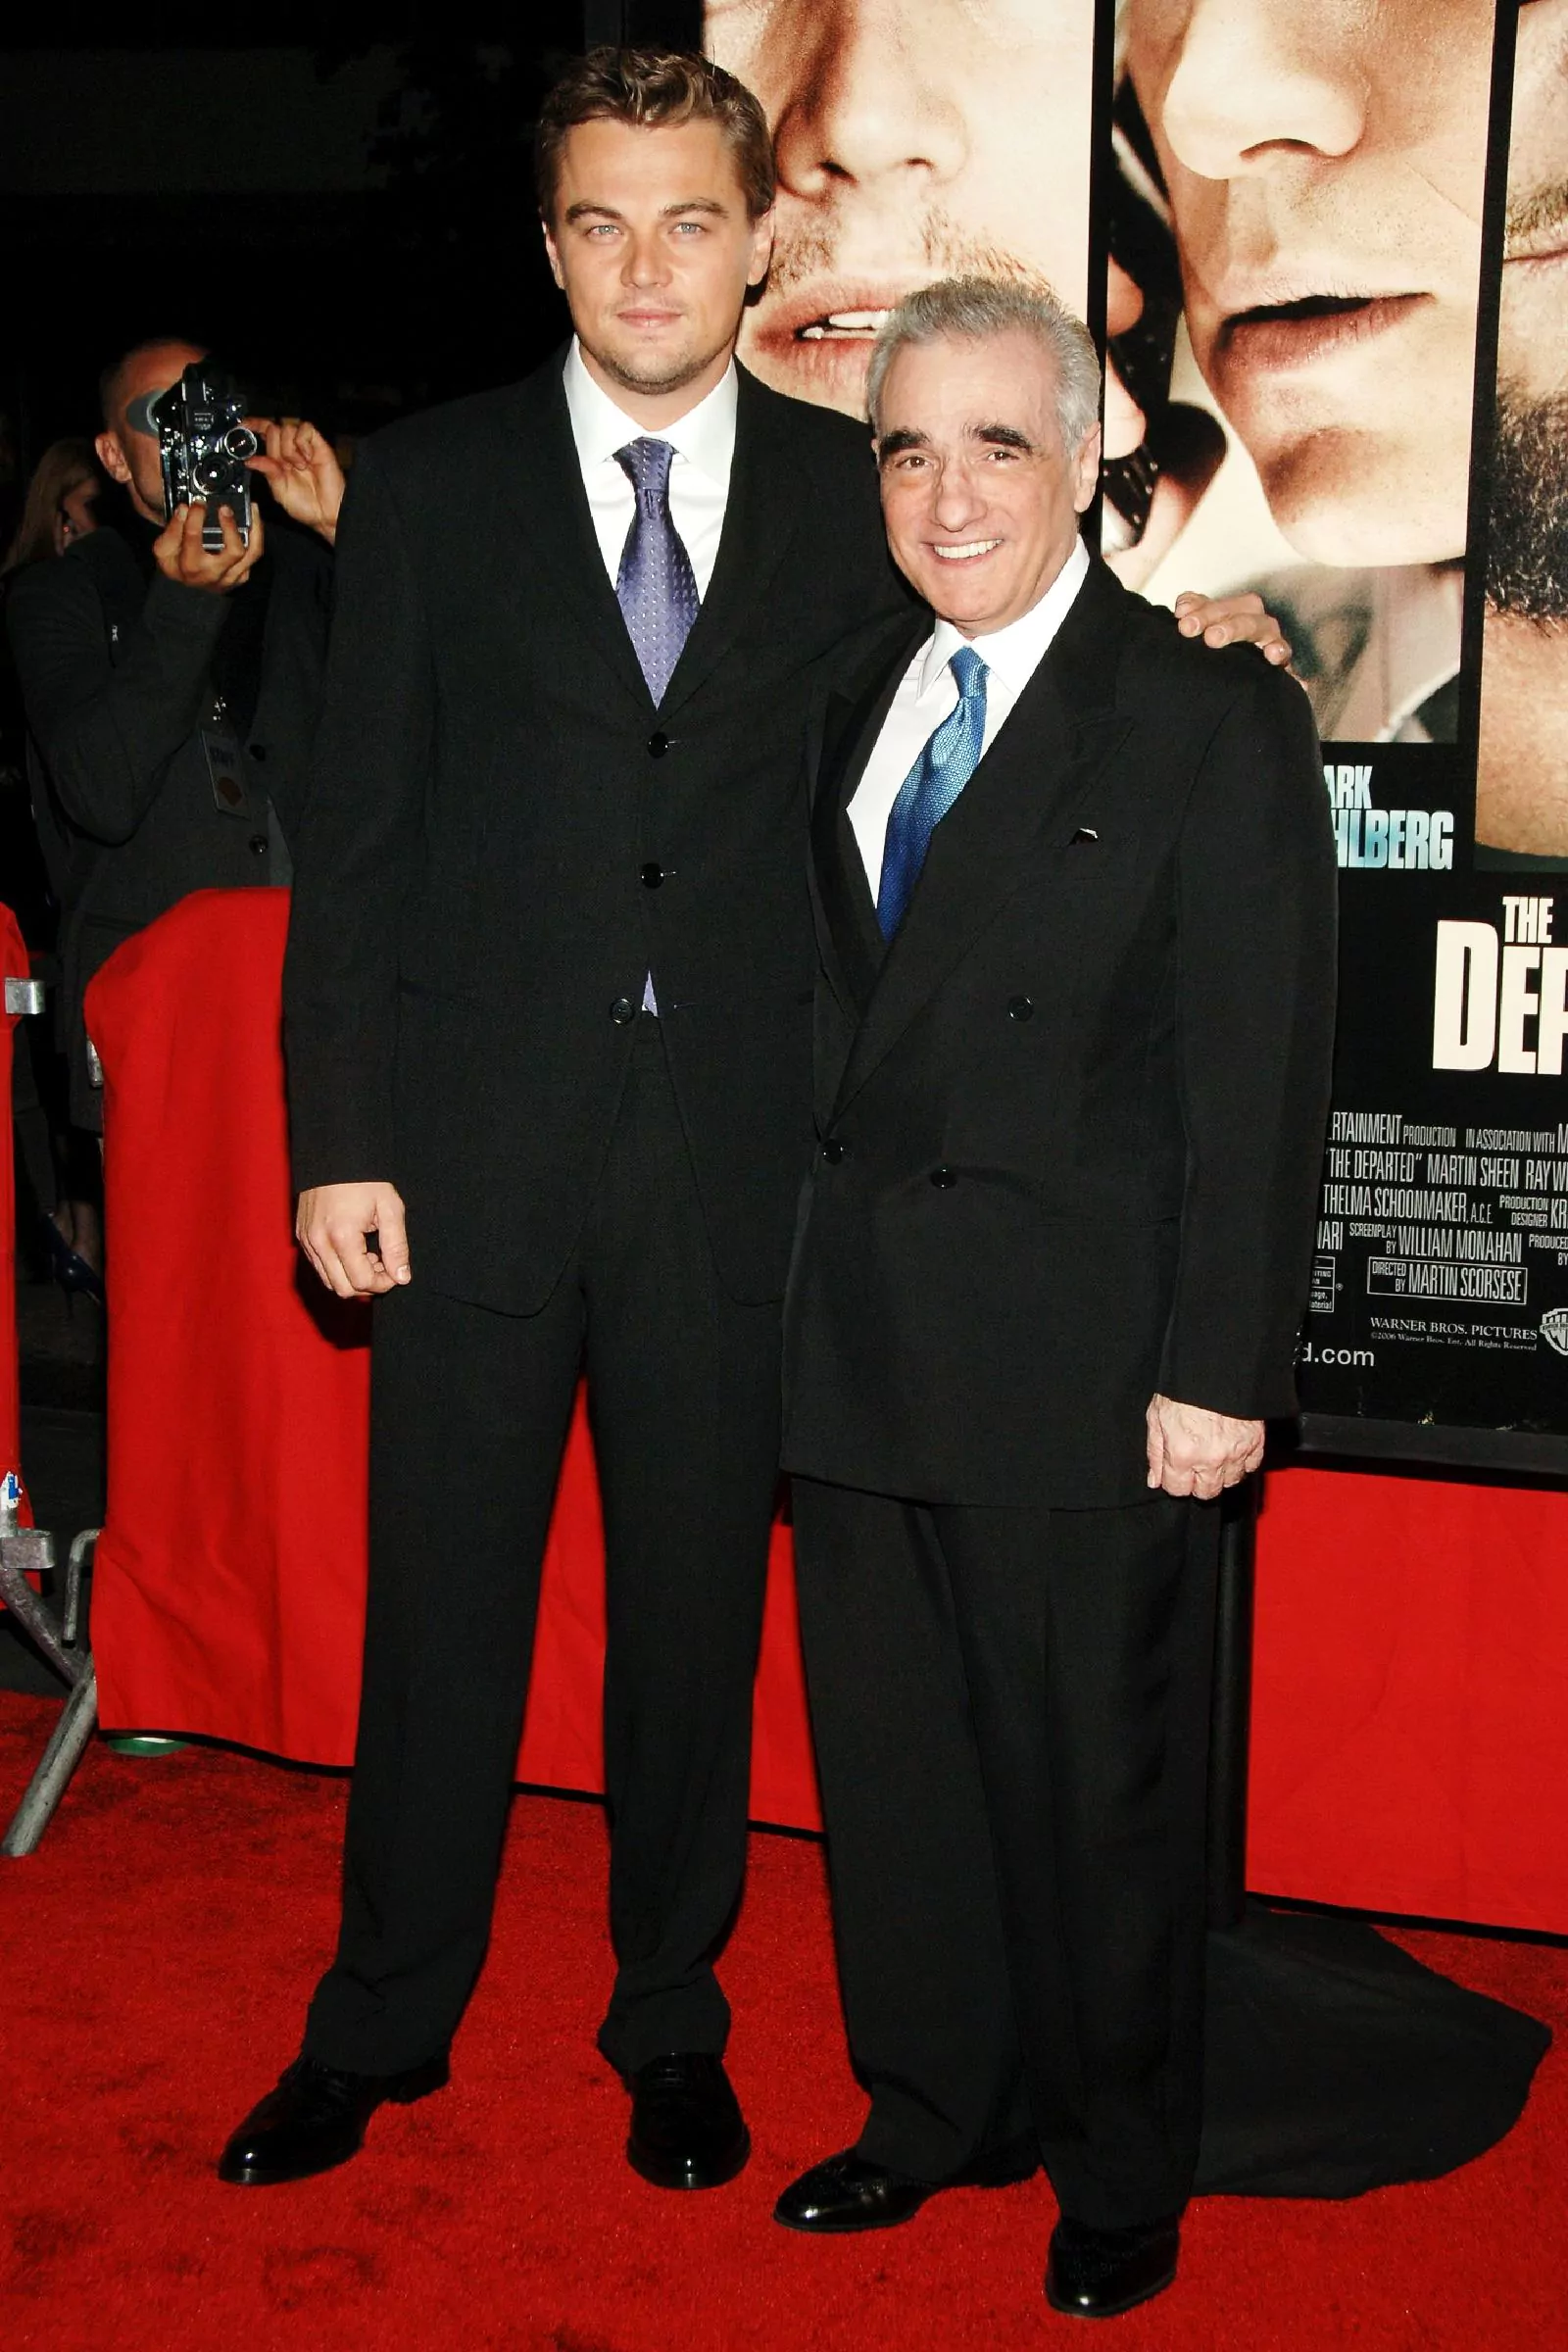 Леонардо Ди Каприо и Мартин Скорсезе на премьера фильма «Отступники» в Нью-Йорке, 26 сентября 2006 г.